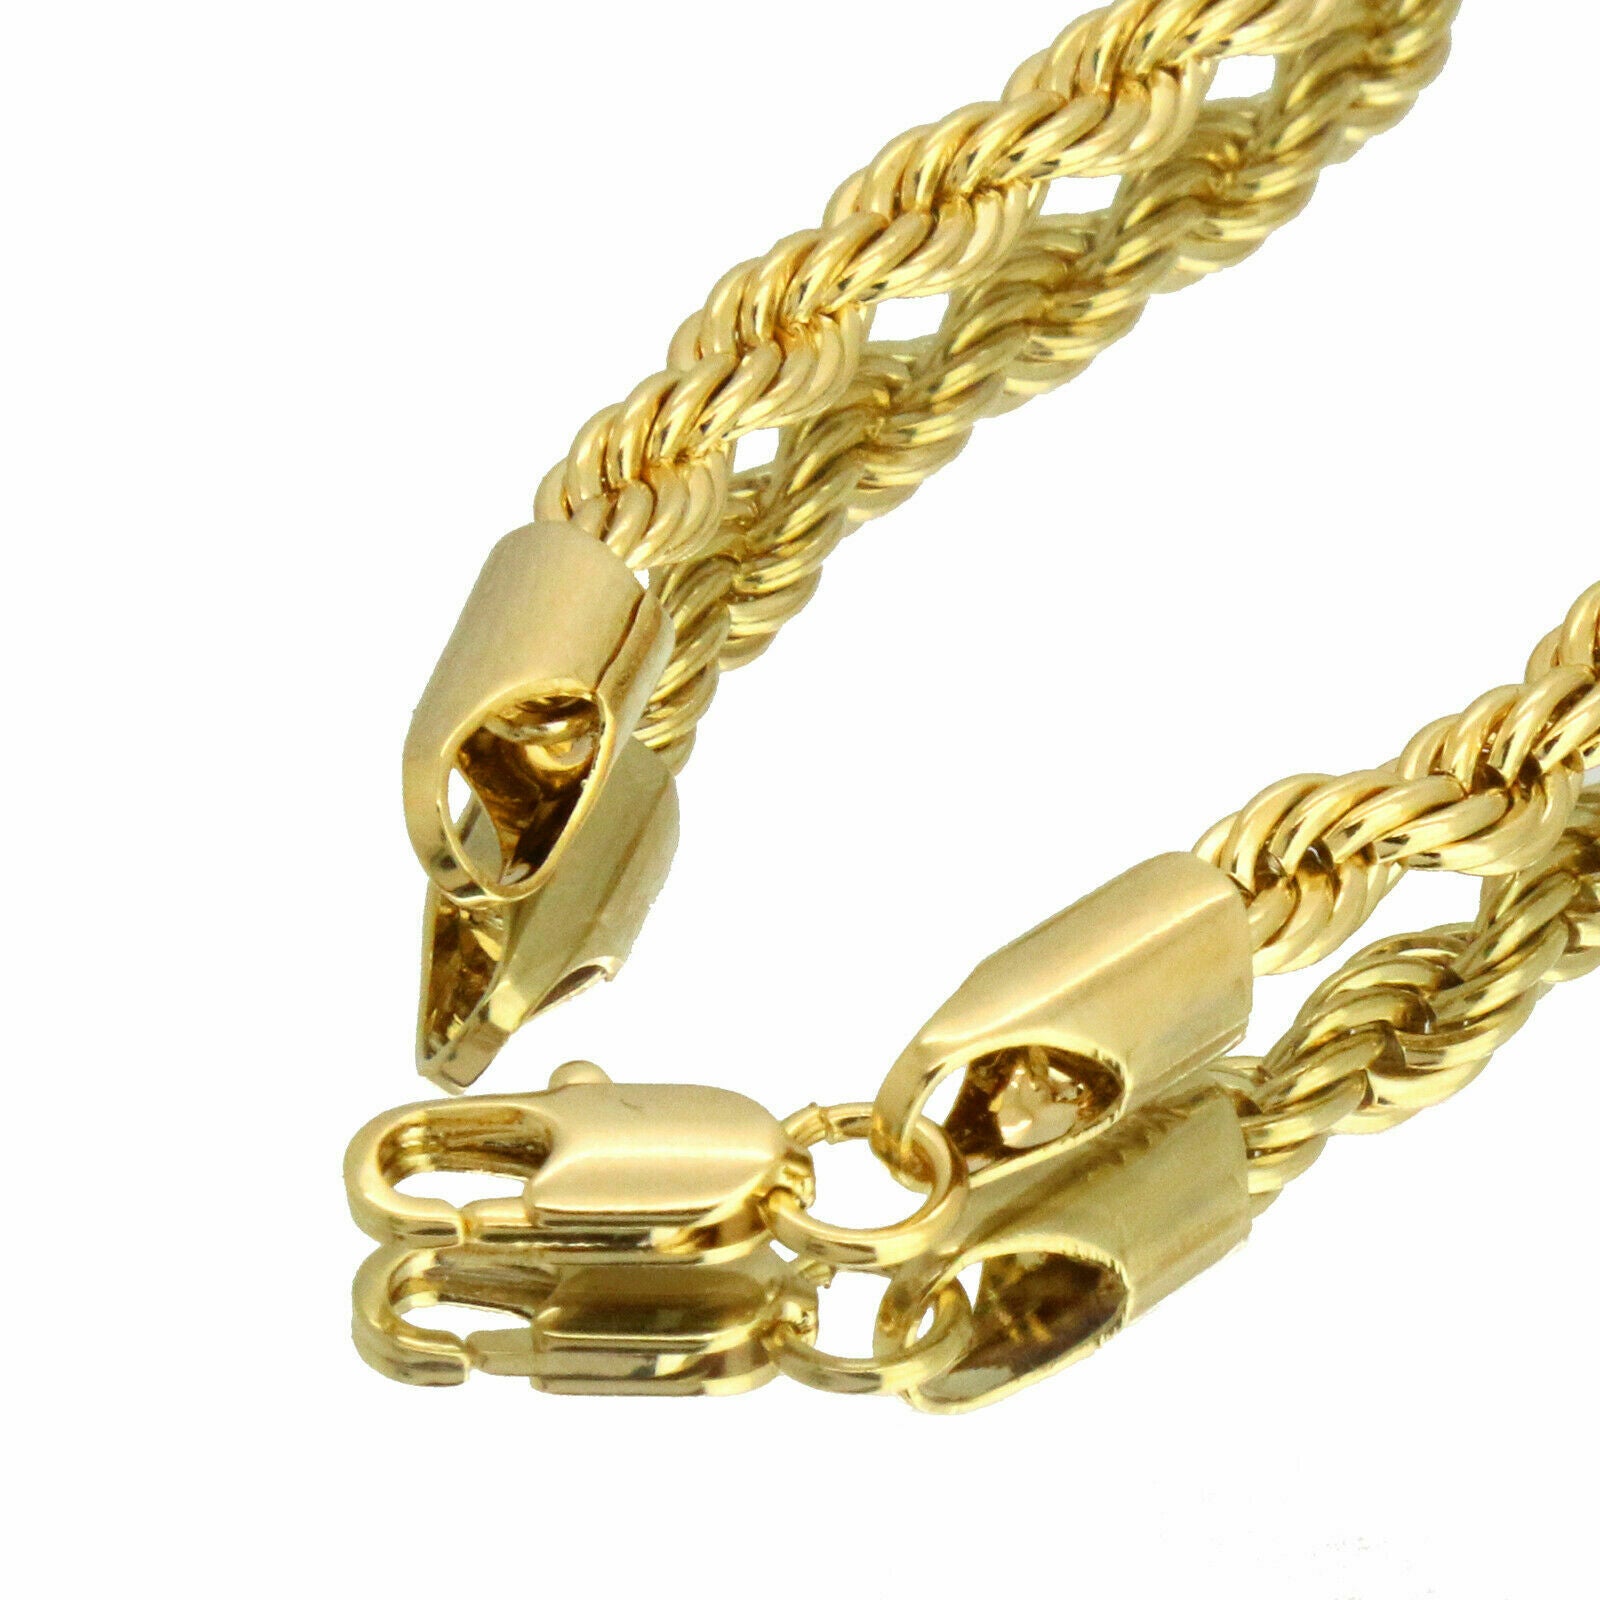 Culture Letter Pendant Rope Chain Men's Hip Hop 18k Cz Jewelry Necklace